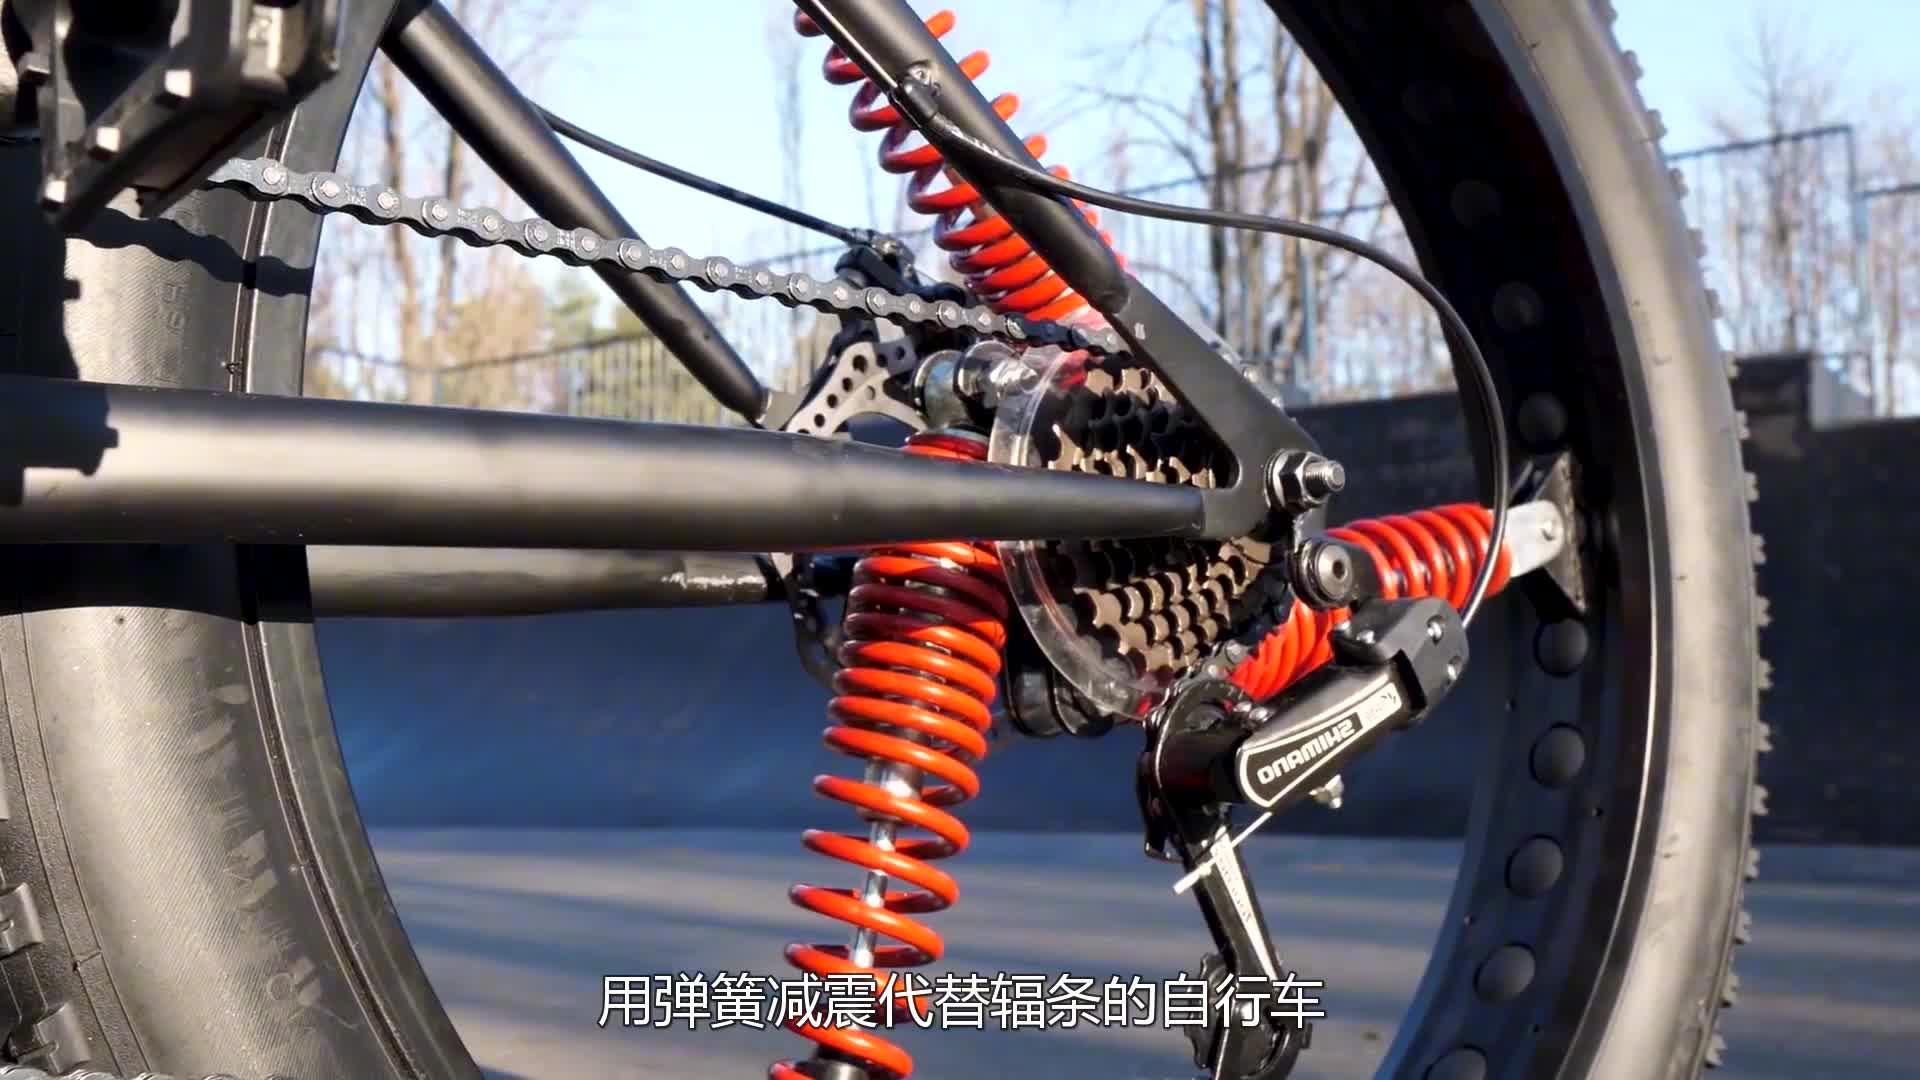 牛人发明弹簧自行车轮,用弹簧减震代替辐条,一起见识下吧 